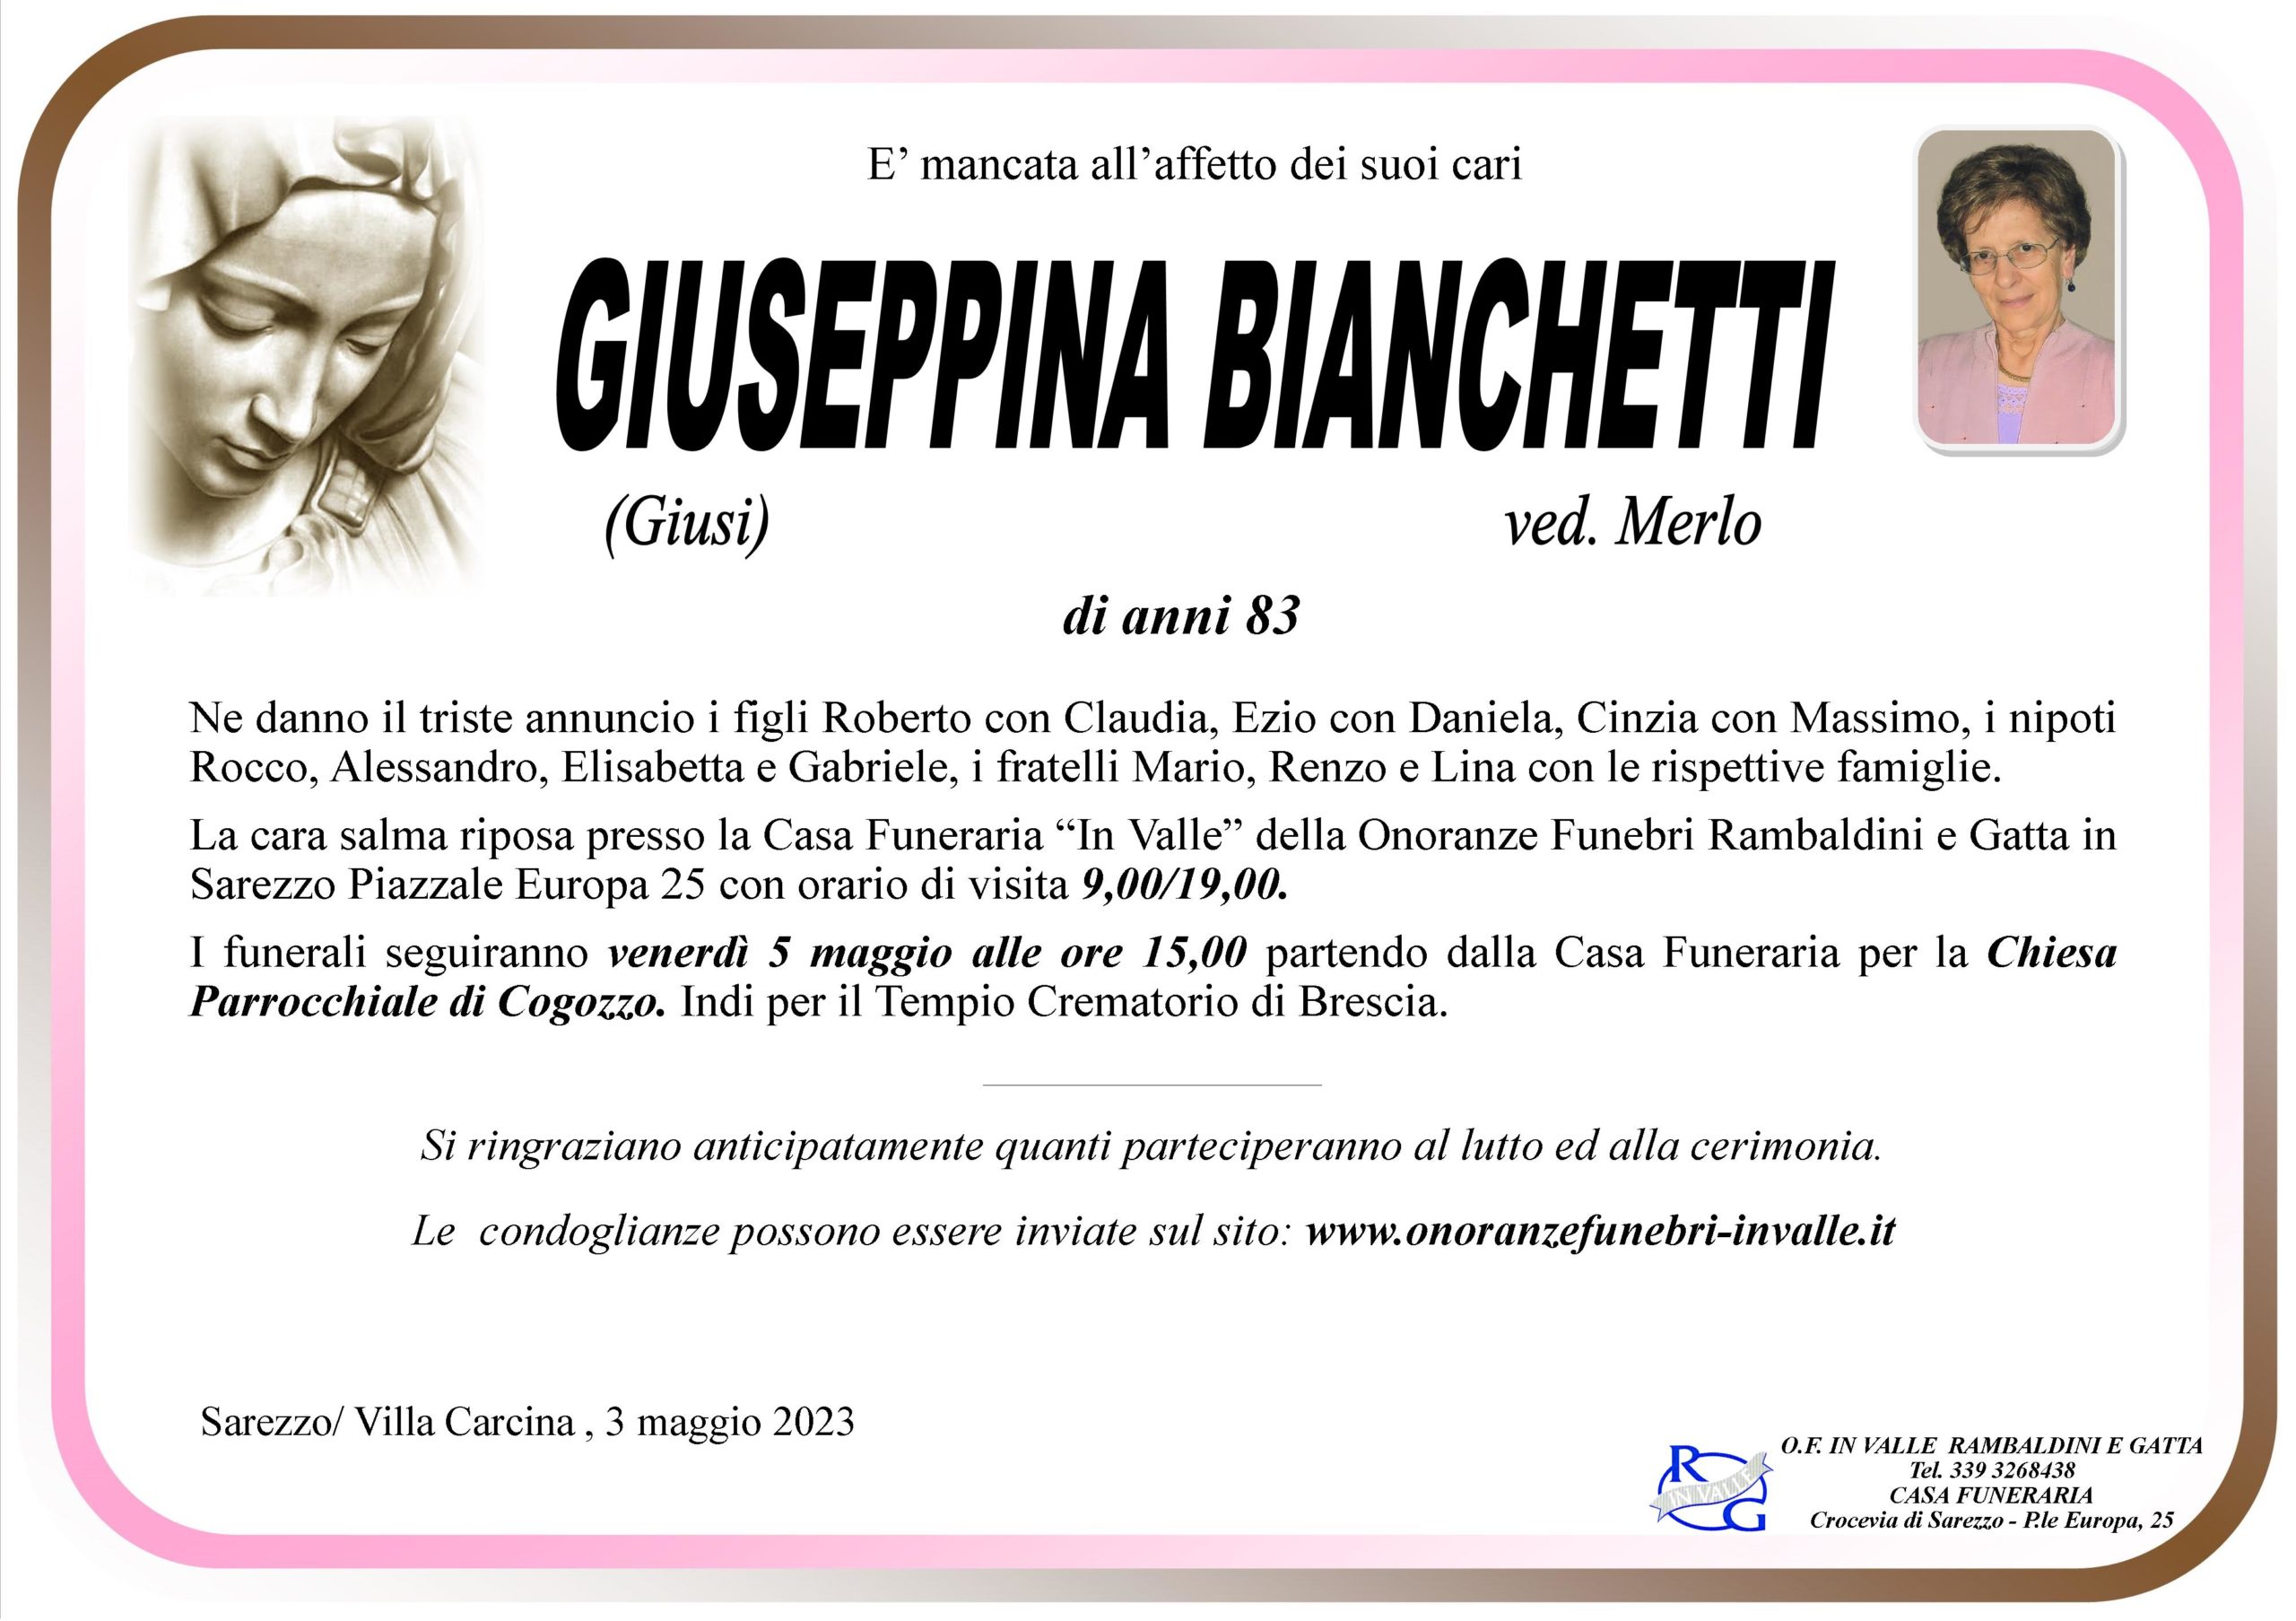 Al momento stai visualizzando Bianchetti Giuseppina